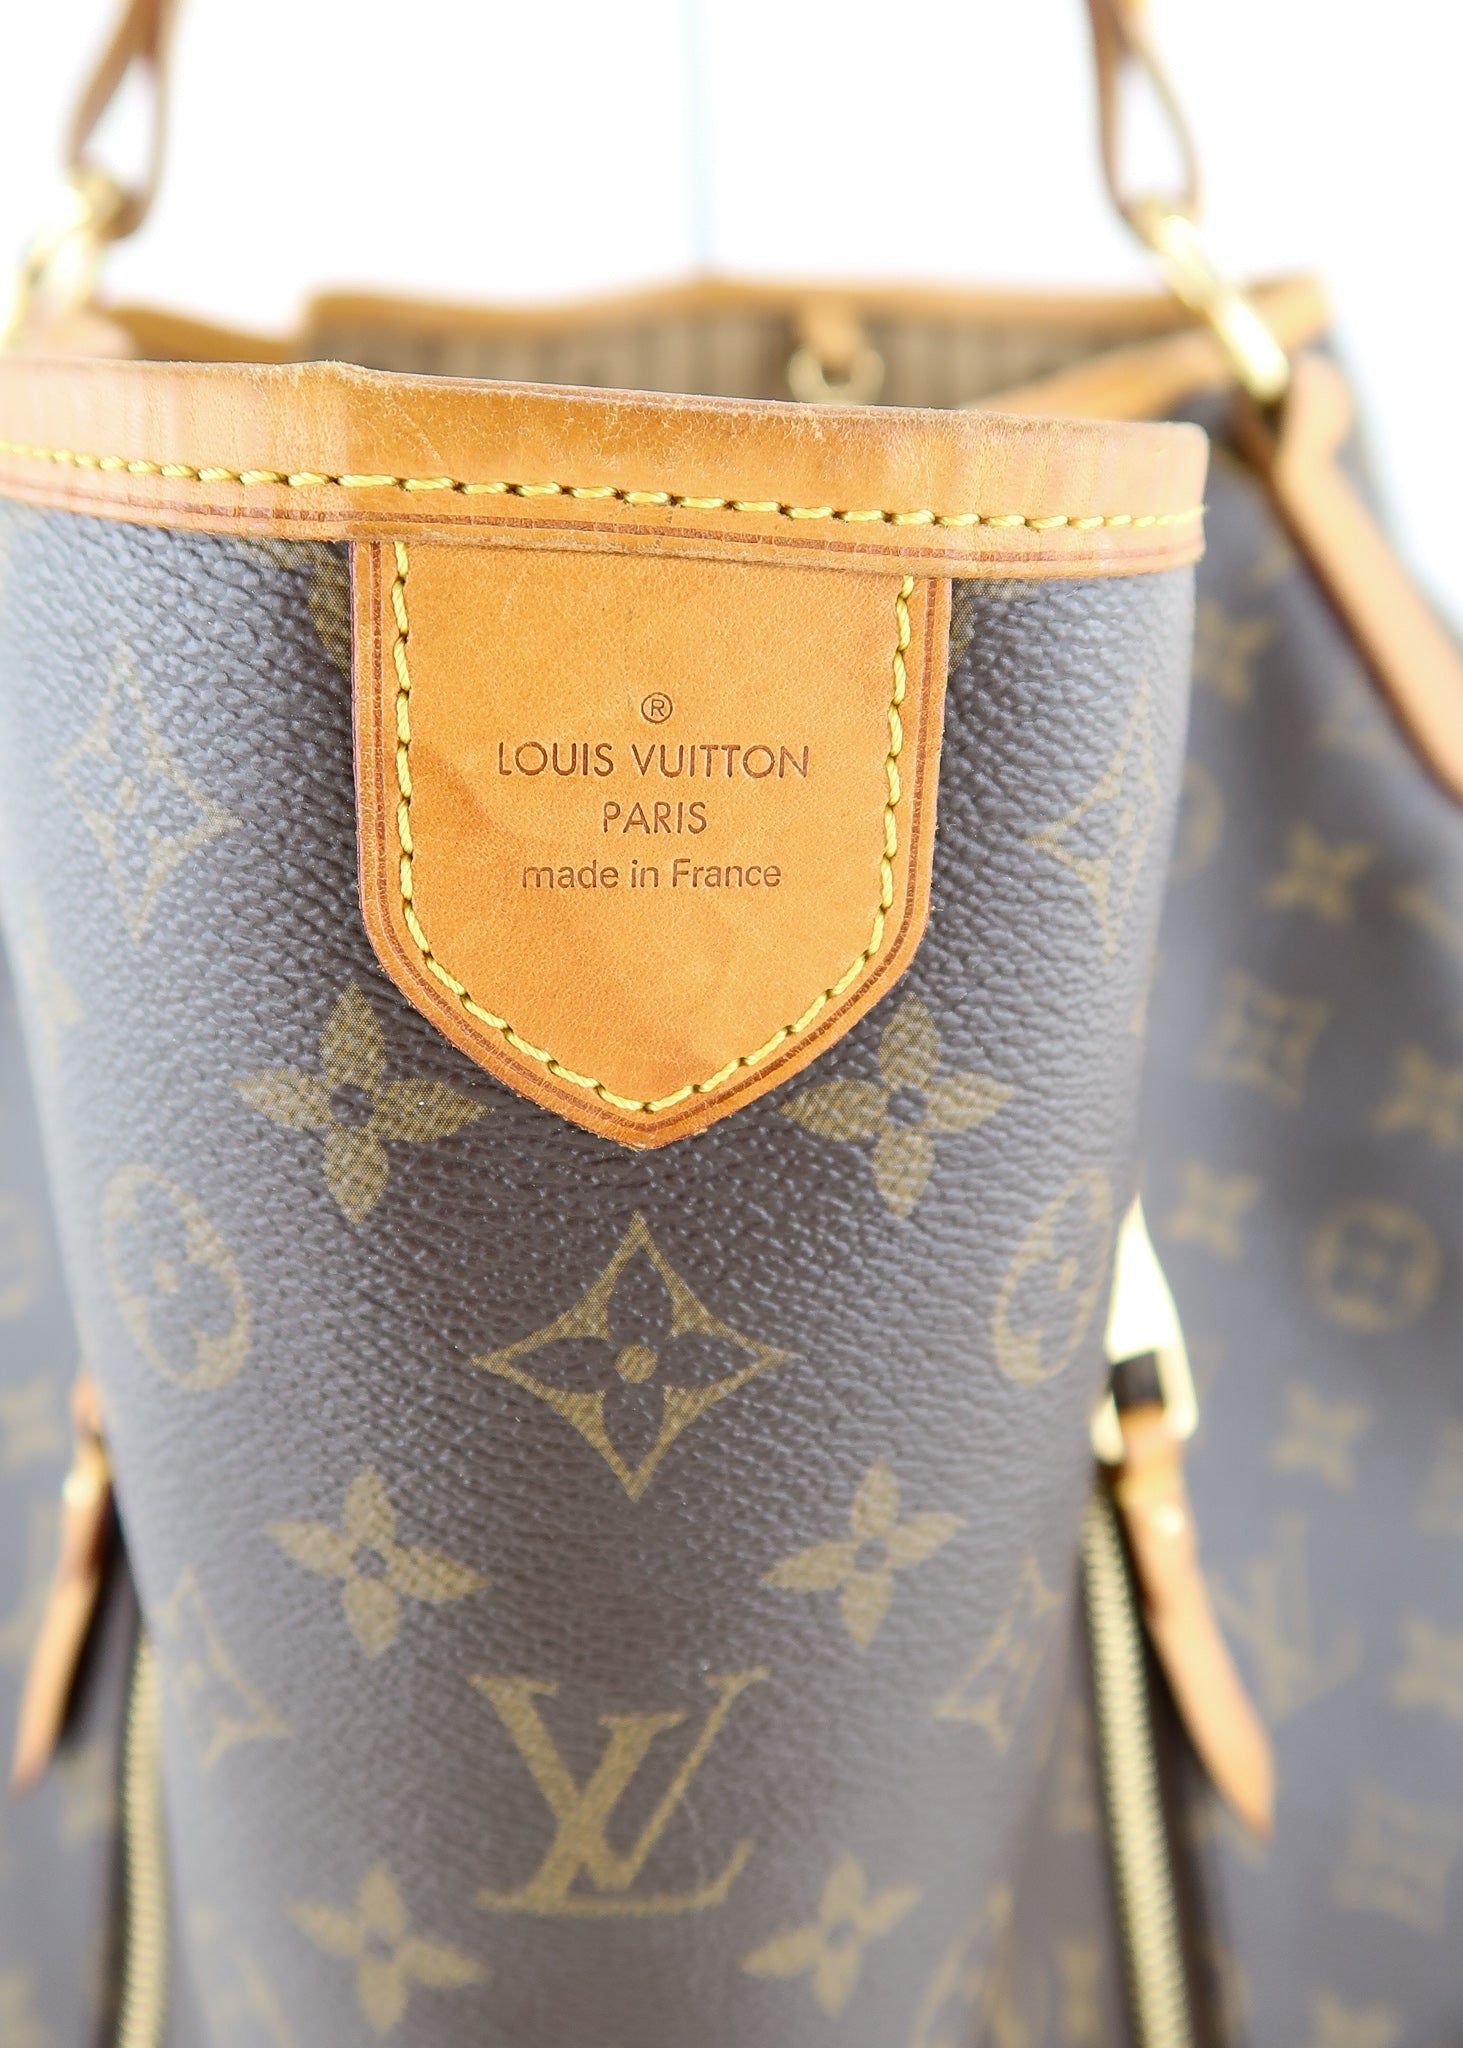 Authenticated Used LOUIS VUITTON Louis Vuitton Monogram Delightful GM  Shoulder Bag M40354 